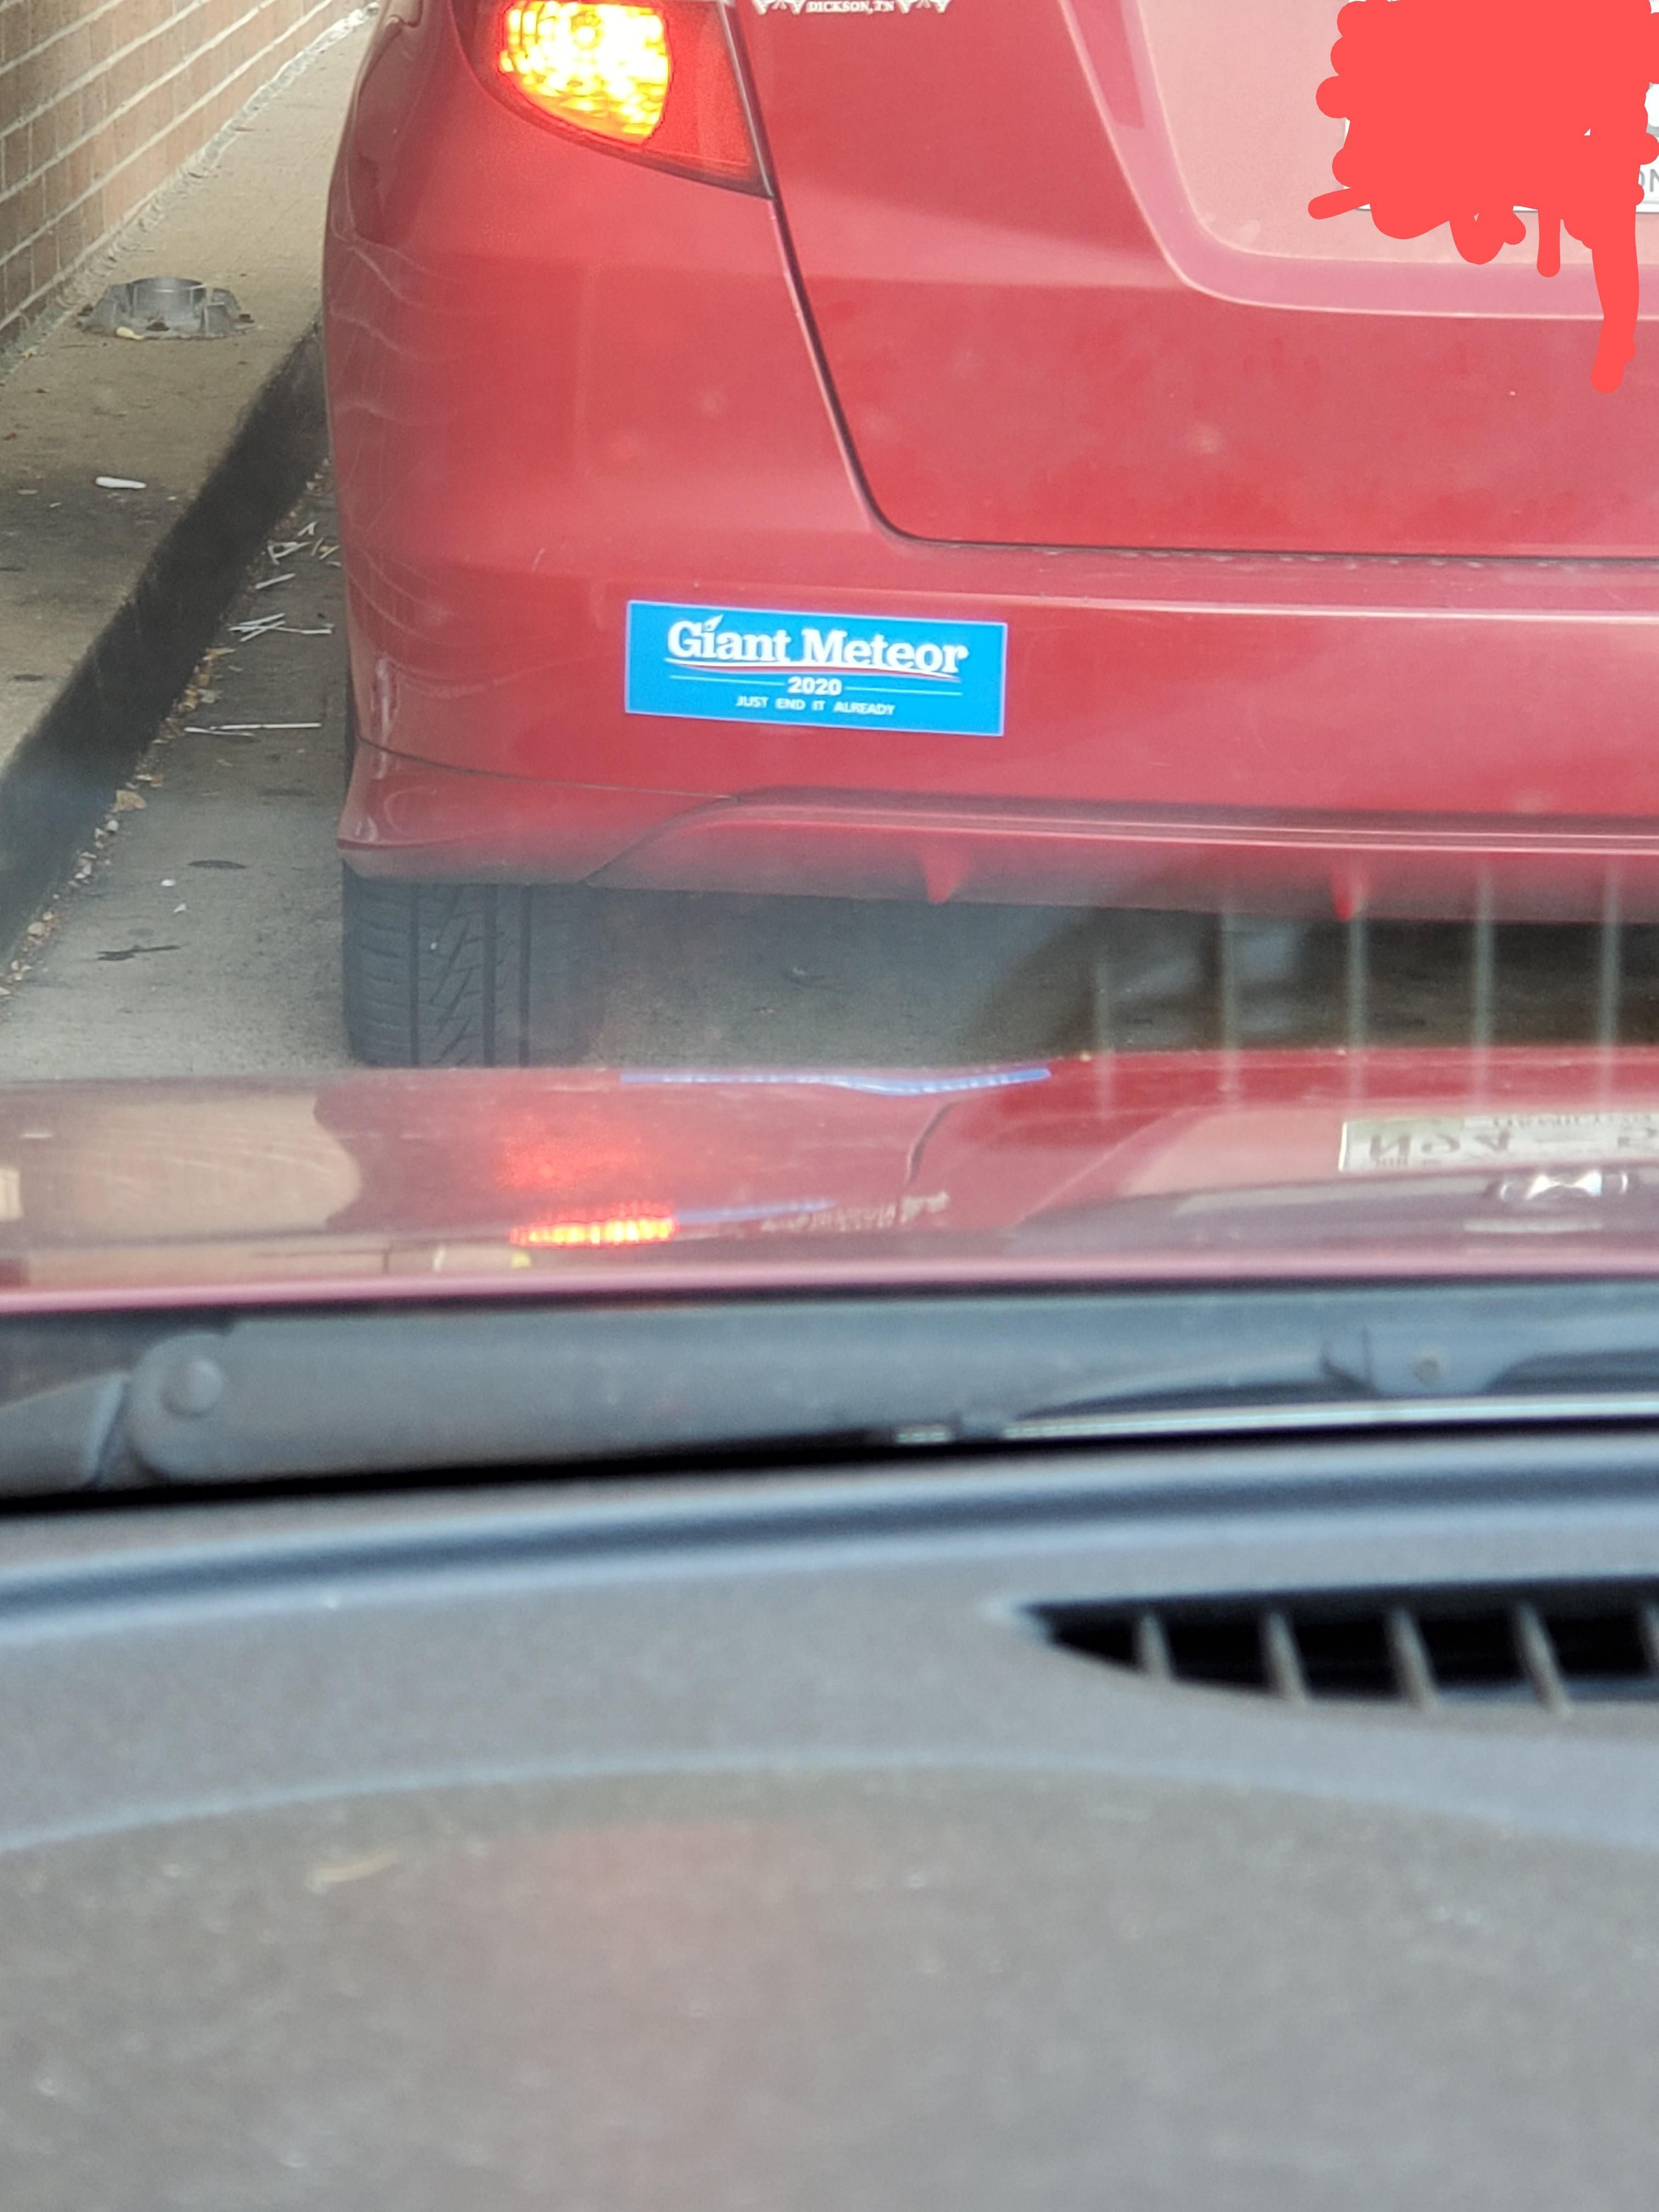 Found this bumper sticker today.